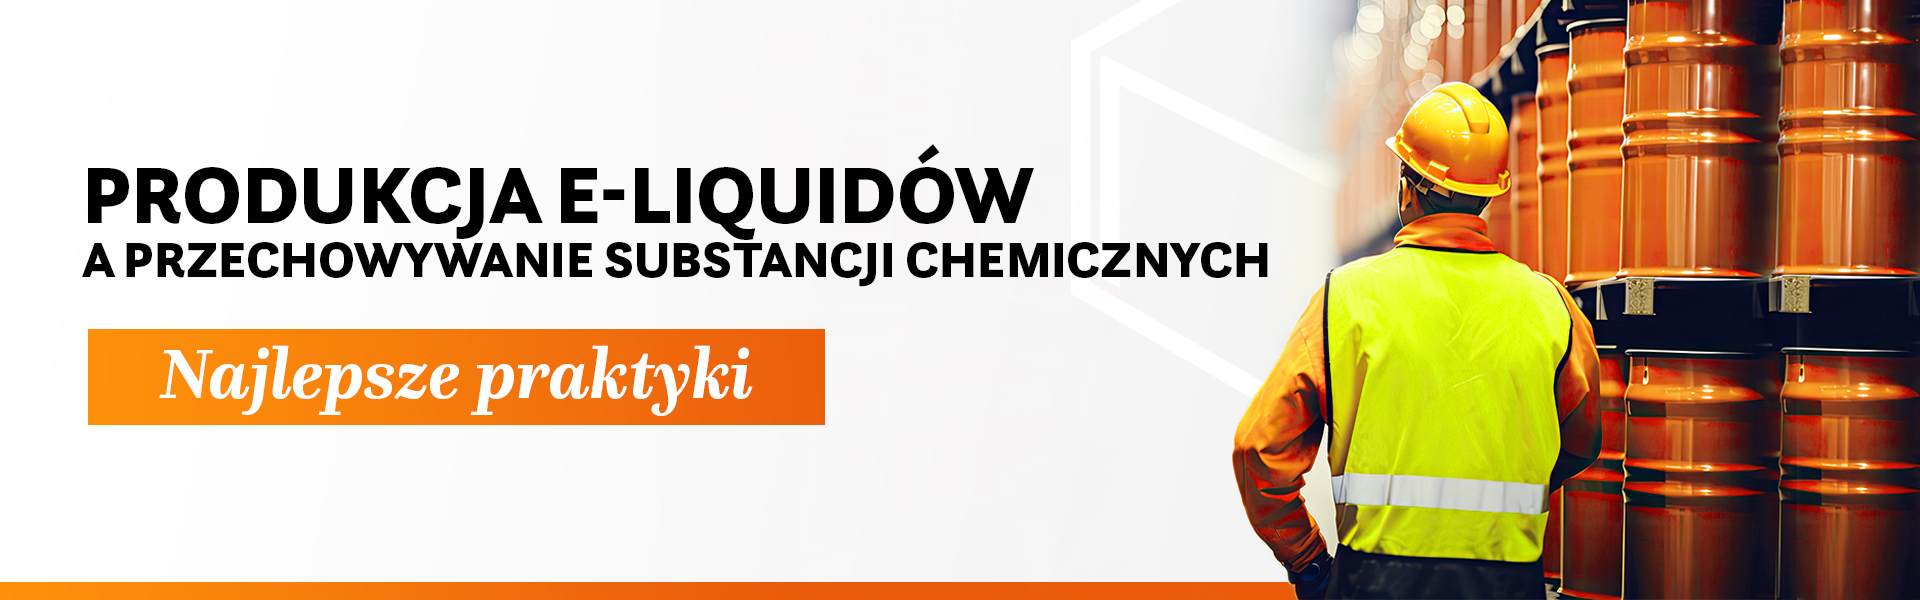 przechowywanie substancji chemicznych w produkcji e-liquidów